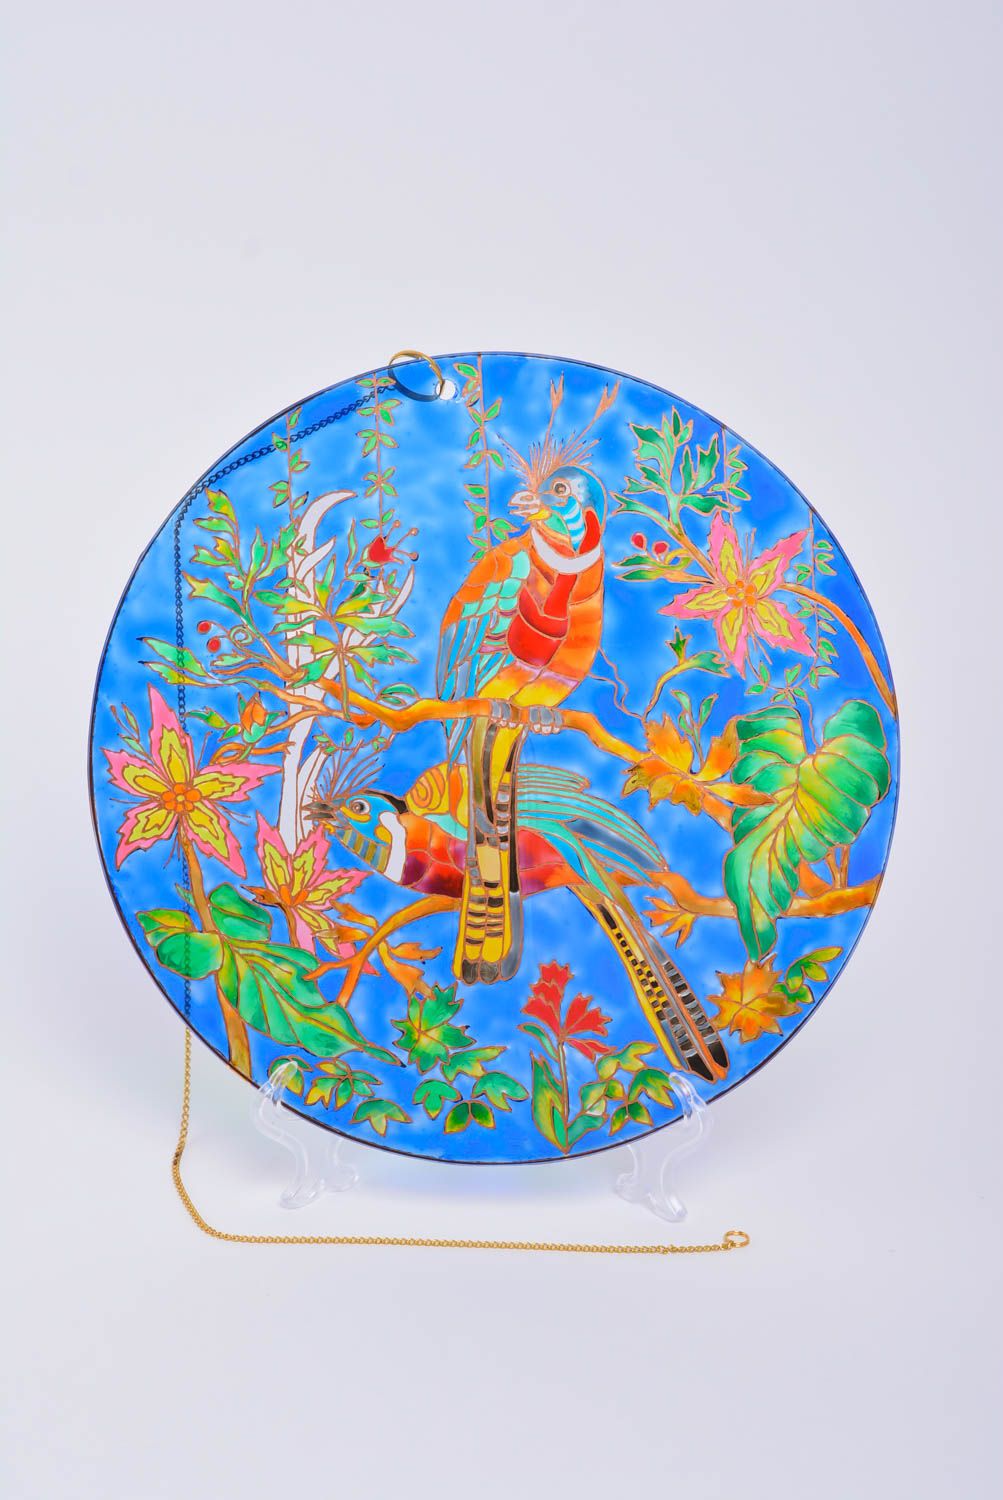 Декоративная тарелка из стекла расписанная витражными красками хэндмэйд Экзотика фото 1